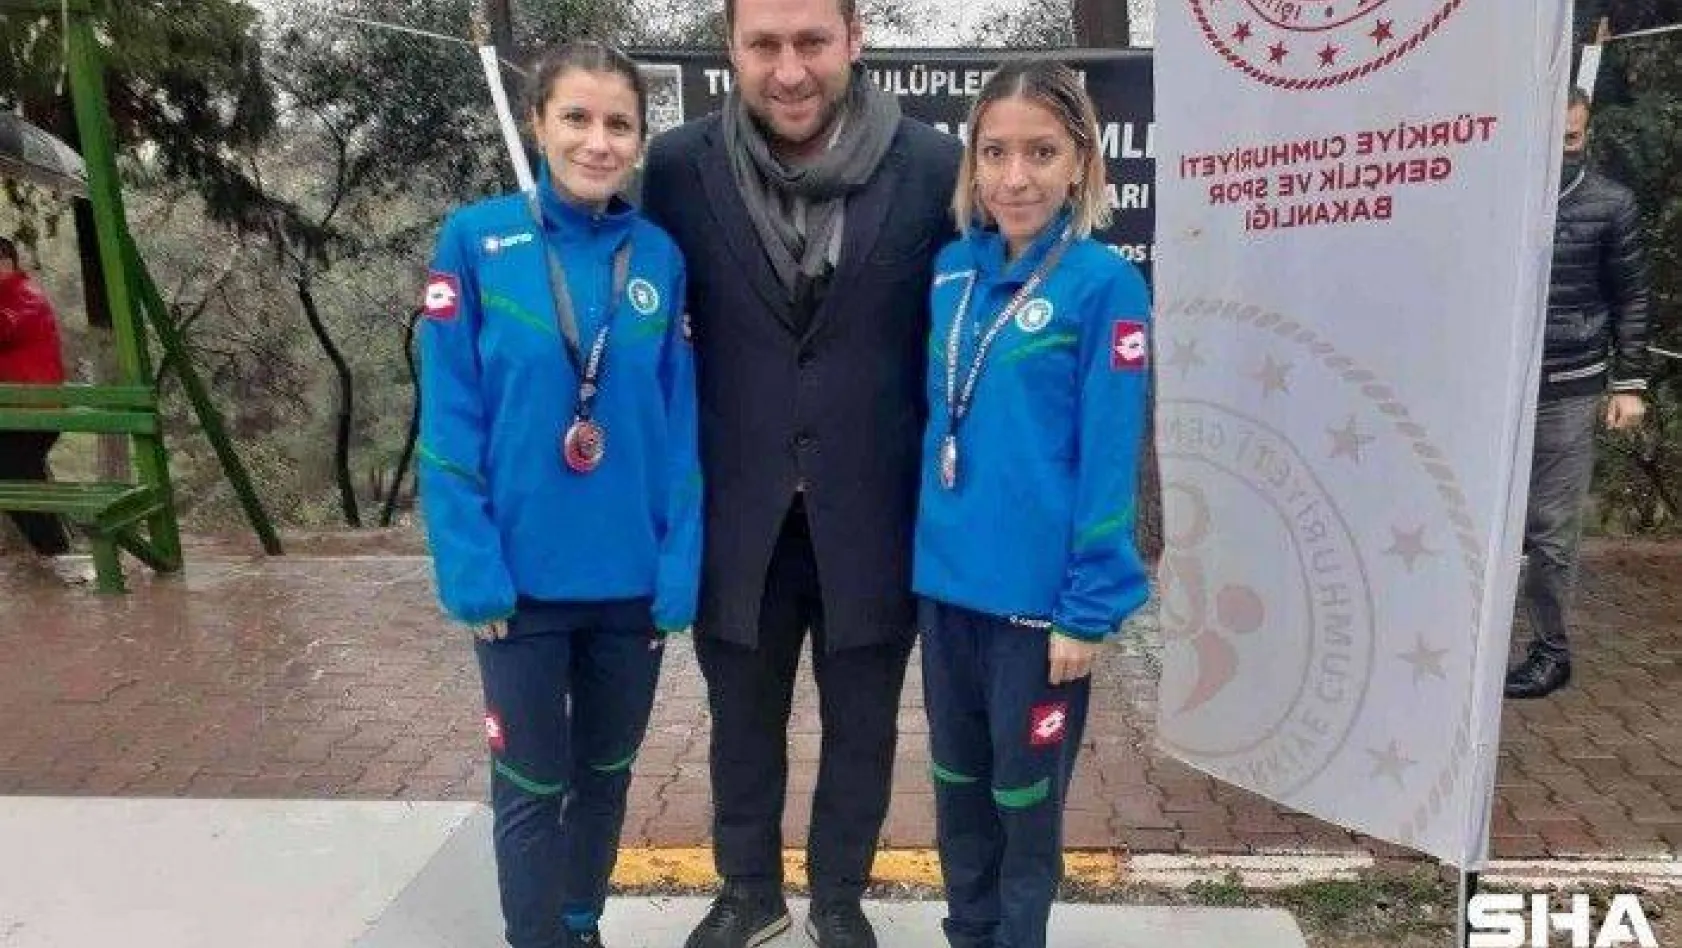 Bursa Büyükşehir Belediyesporlu atletlerden 'Süper' başarı